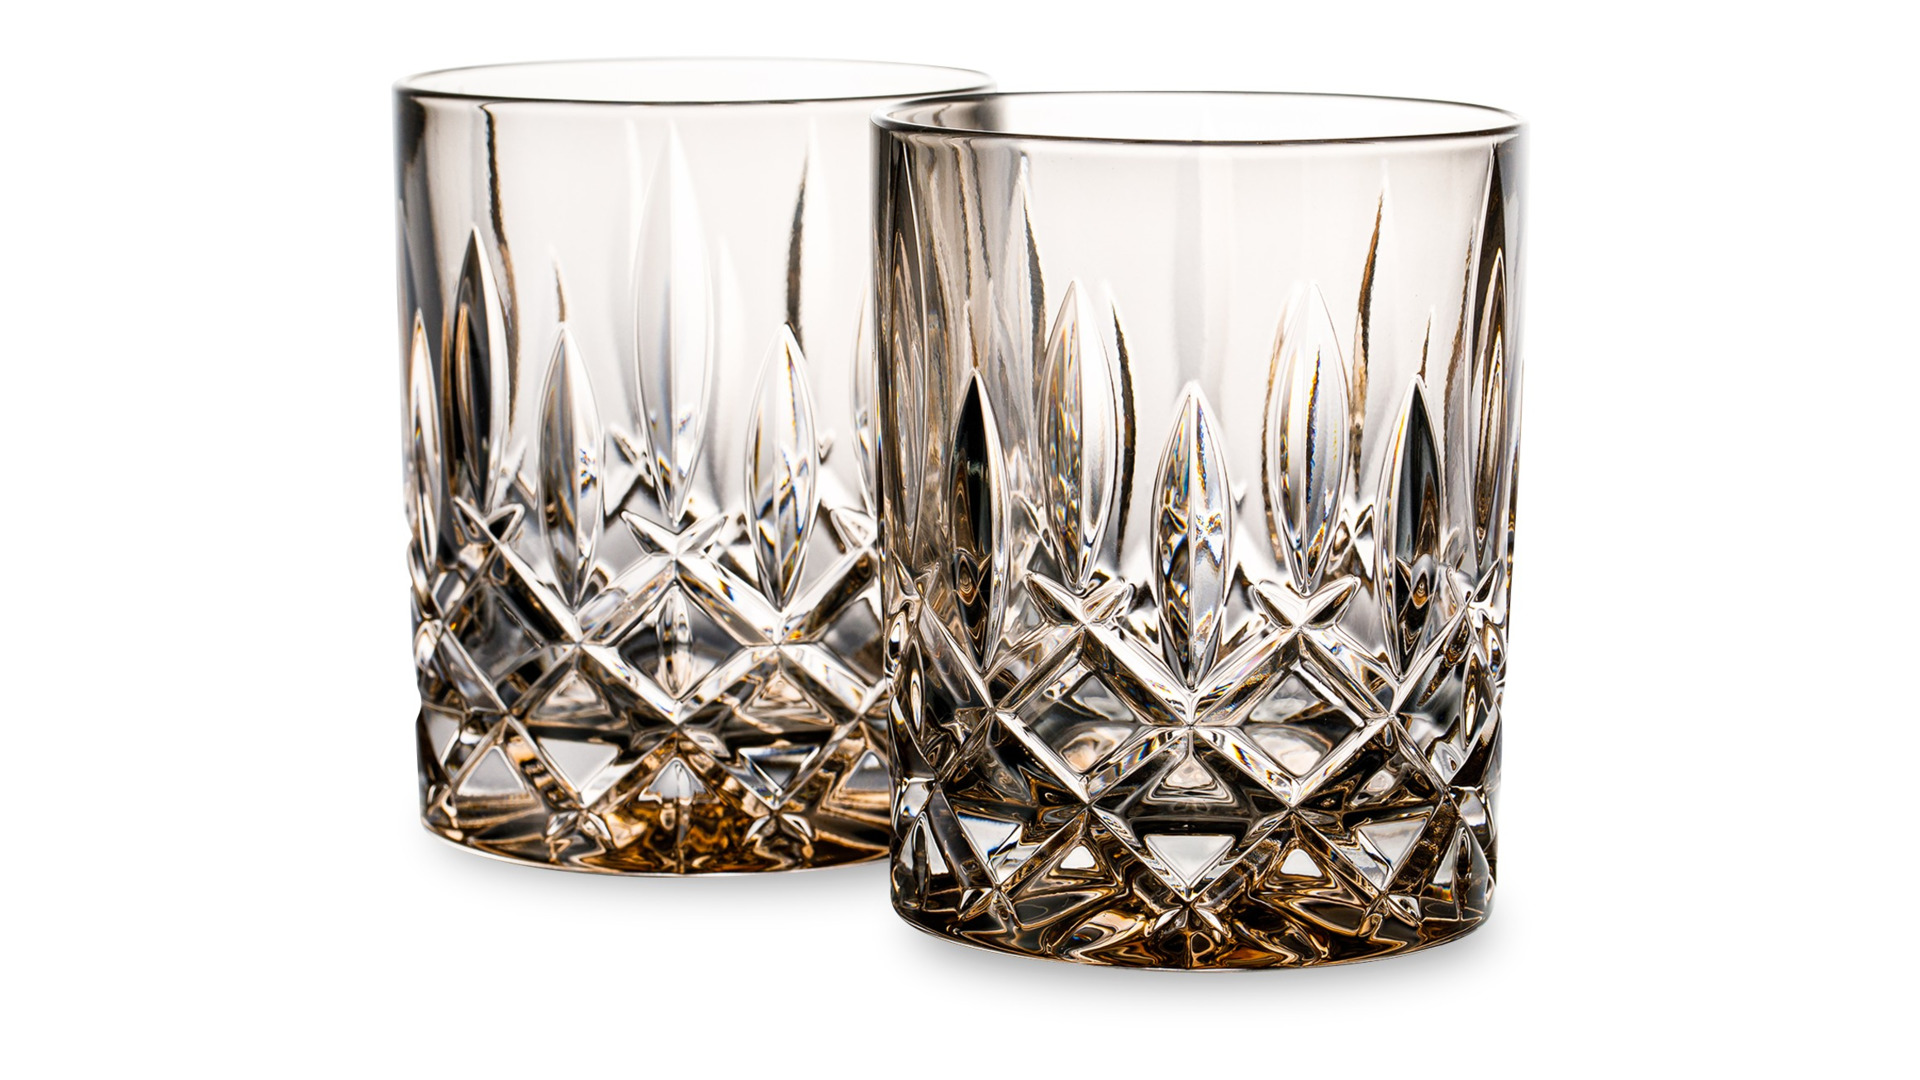 Набор стаканов для виски Nachtmann NOBLESSE COLORS 295 мл, 2 шт, стекло хрустальное, коричневый, п/к